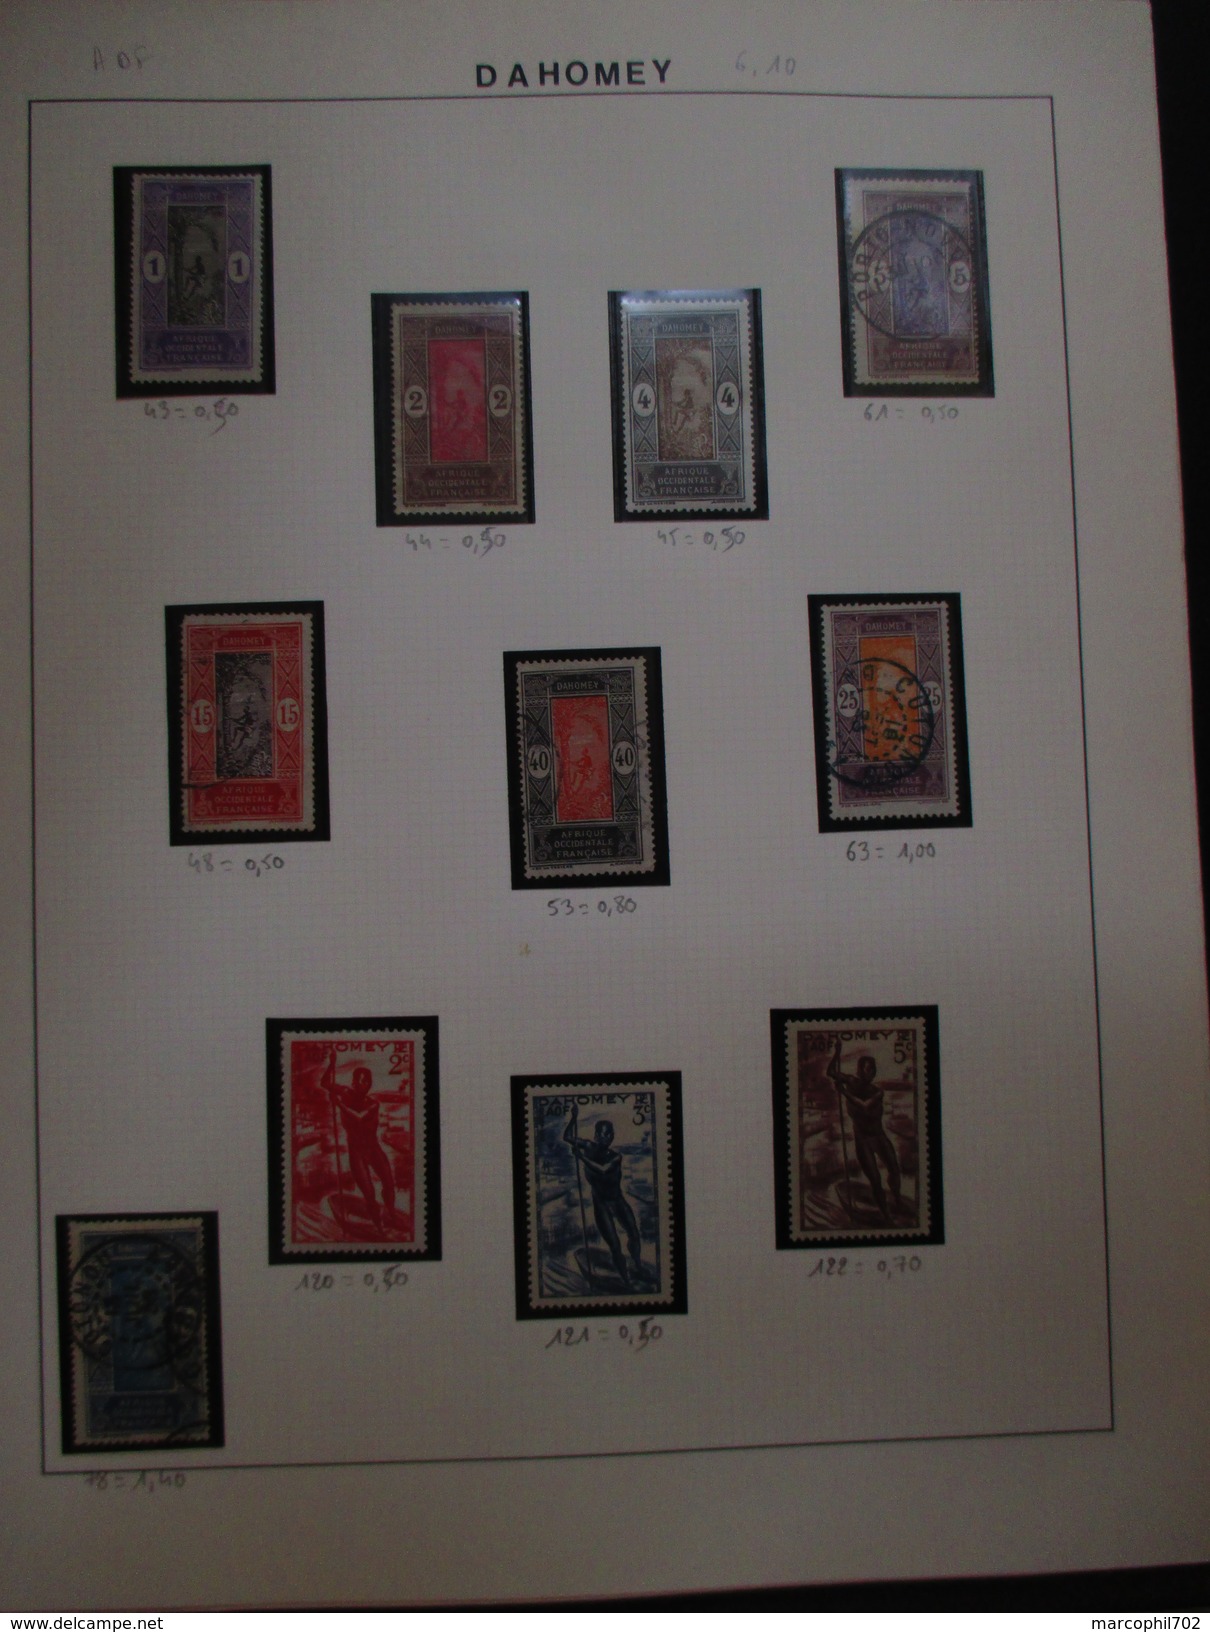 petit lot de timbres anciennes colonnies francaise principalement afrique ces timbres sont neuf ou charnieres ou oblitér